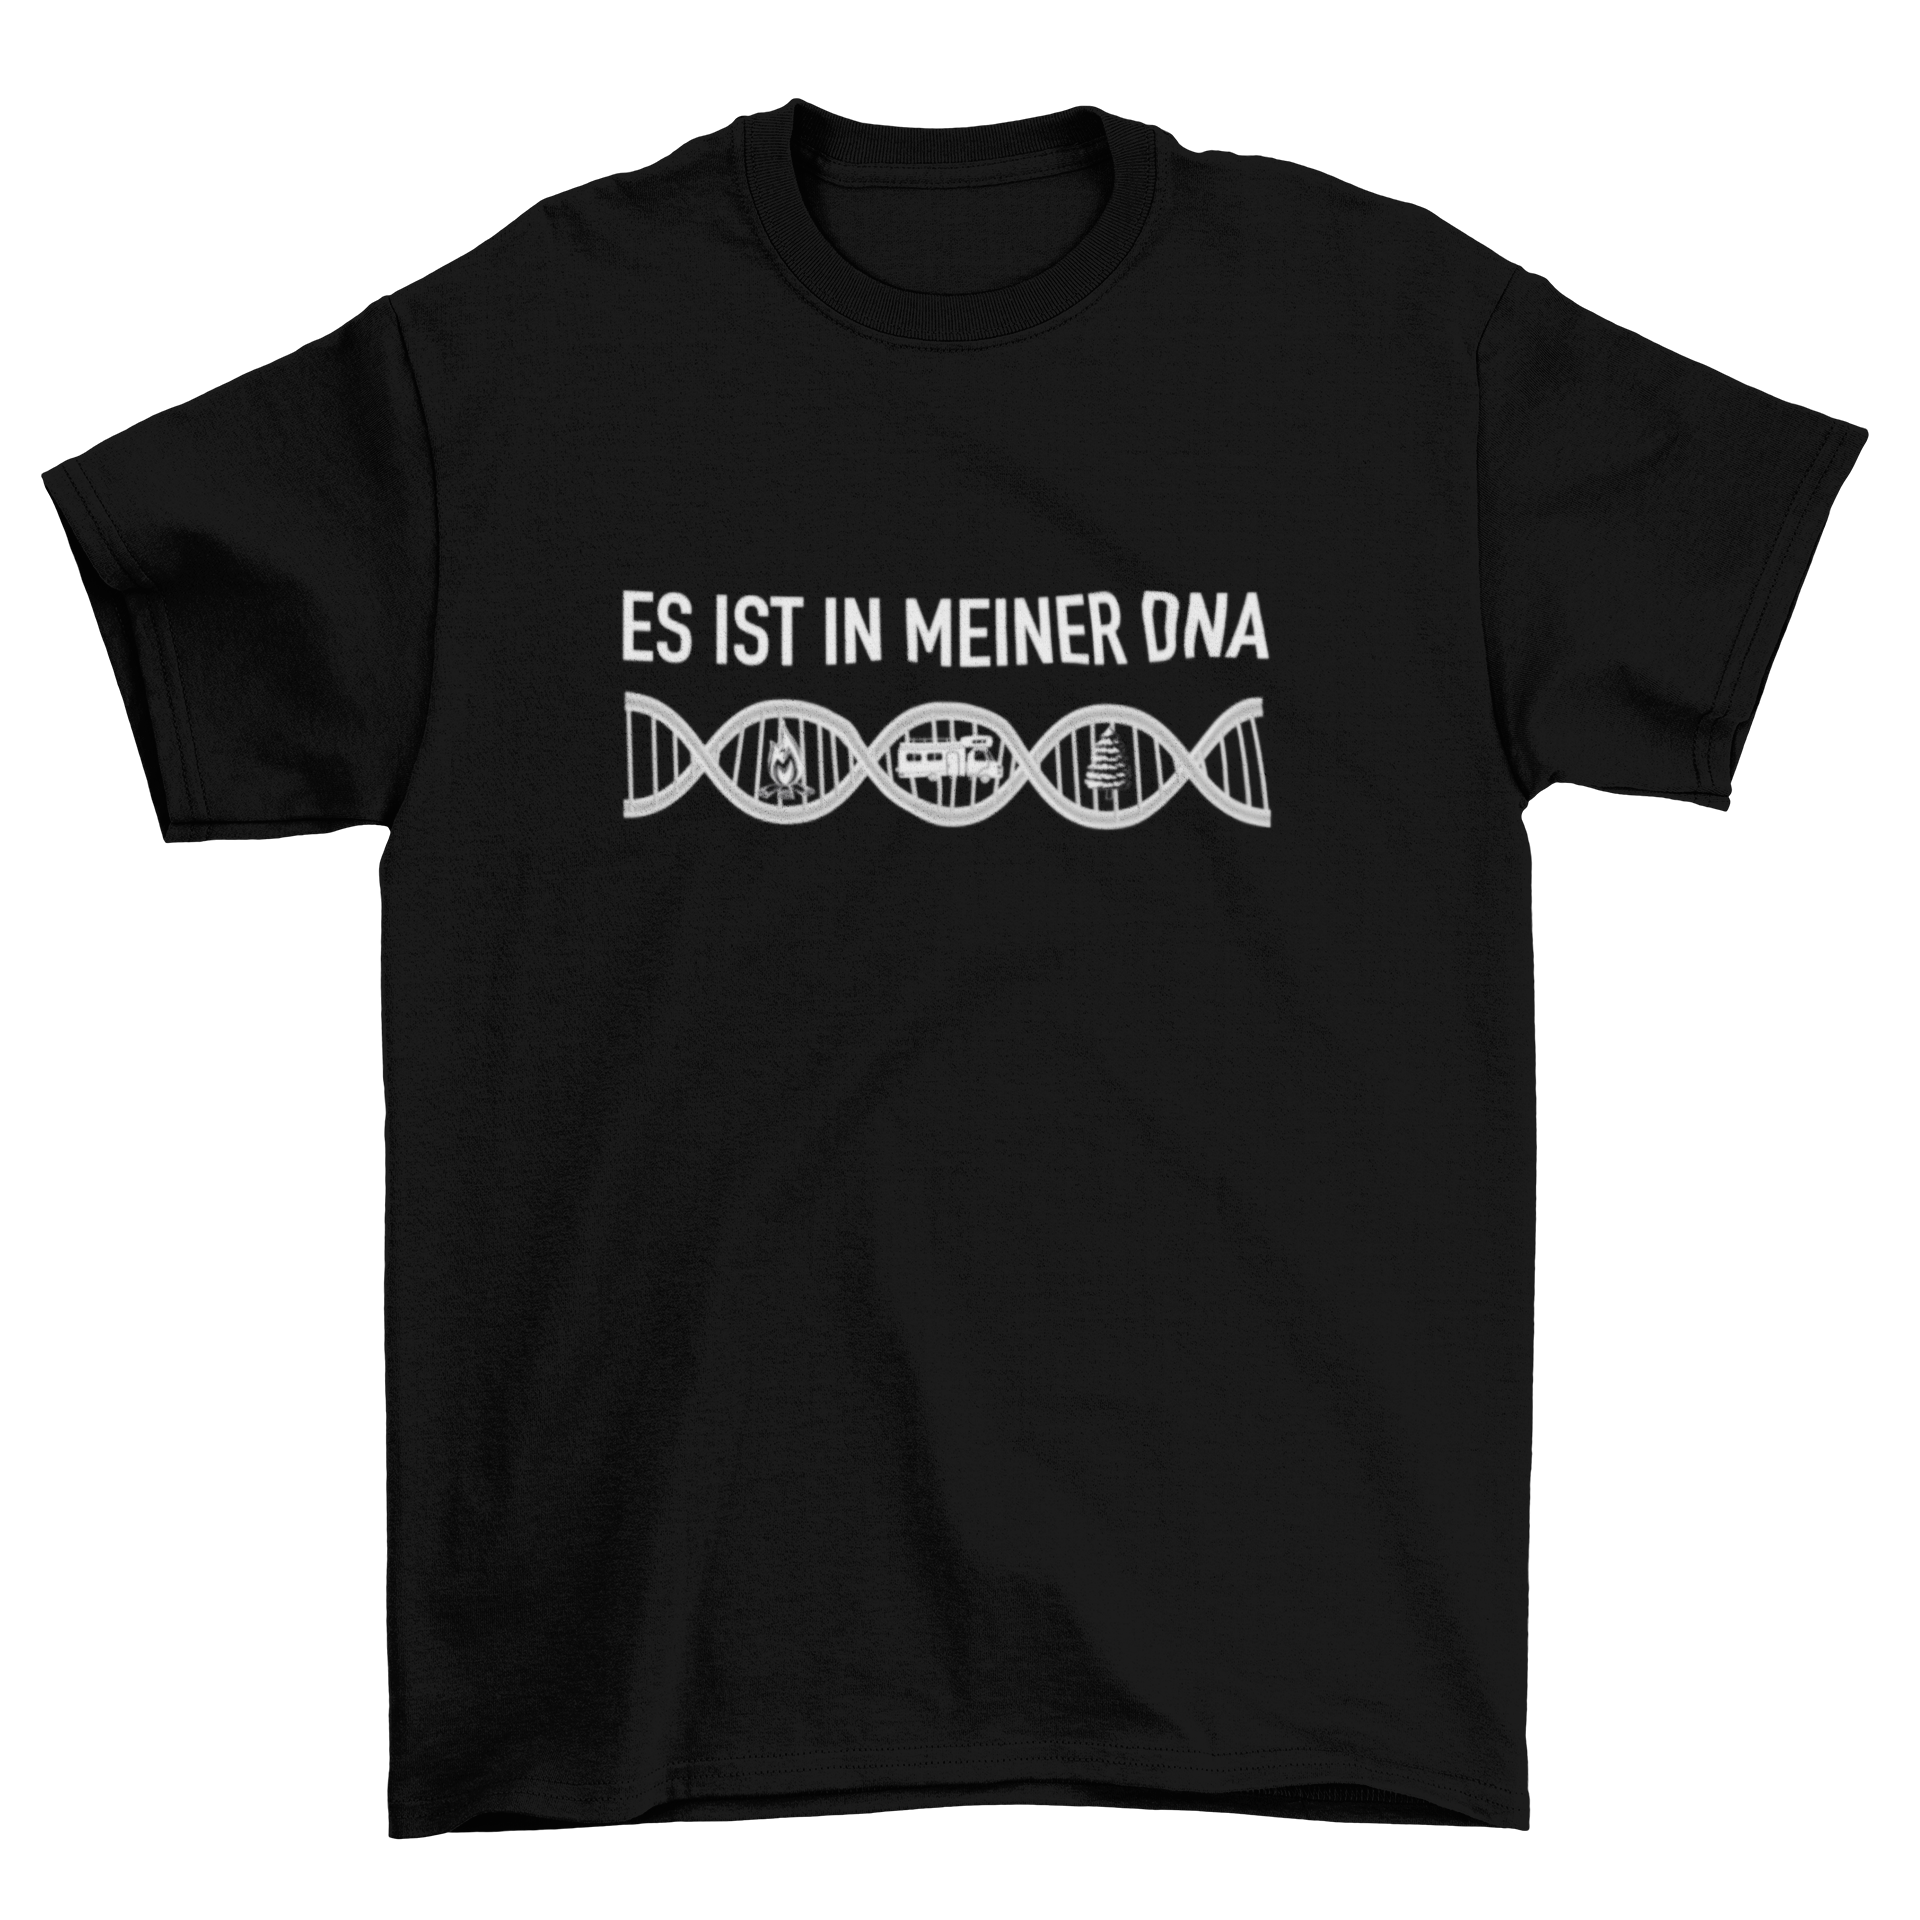 Es ist in meiner DNA T-Shirt